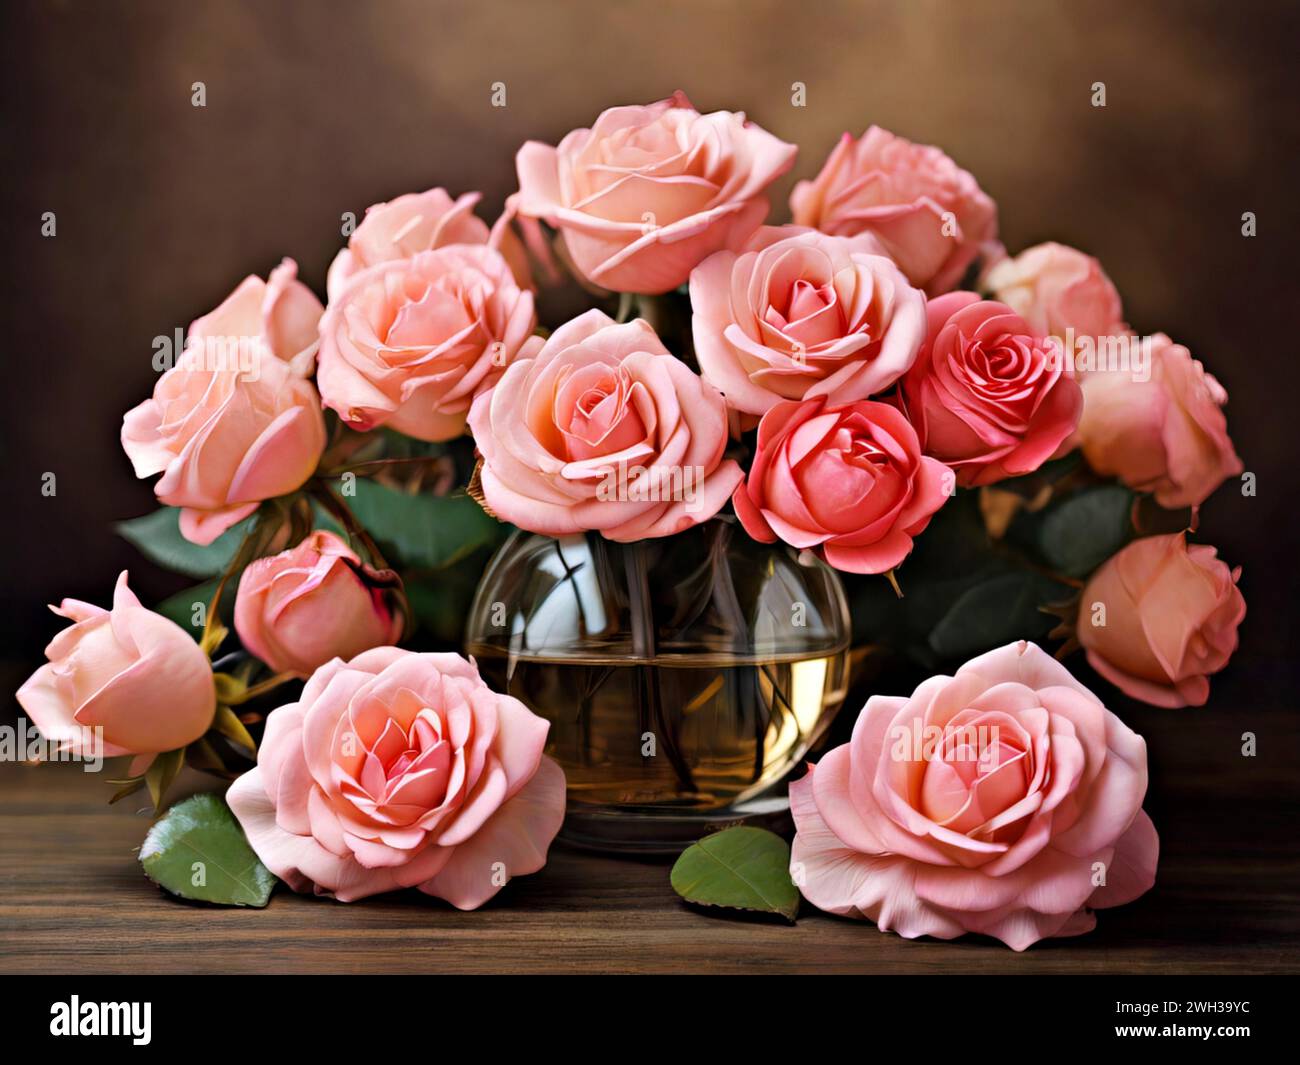 Beau bouquet de roses roses dans un vase en cristal. Illustration de Vecteur